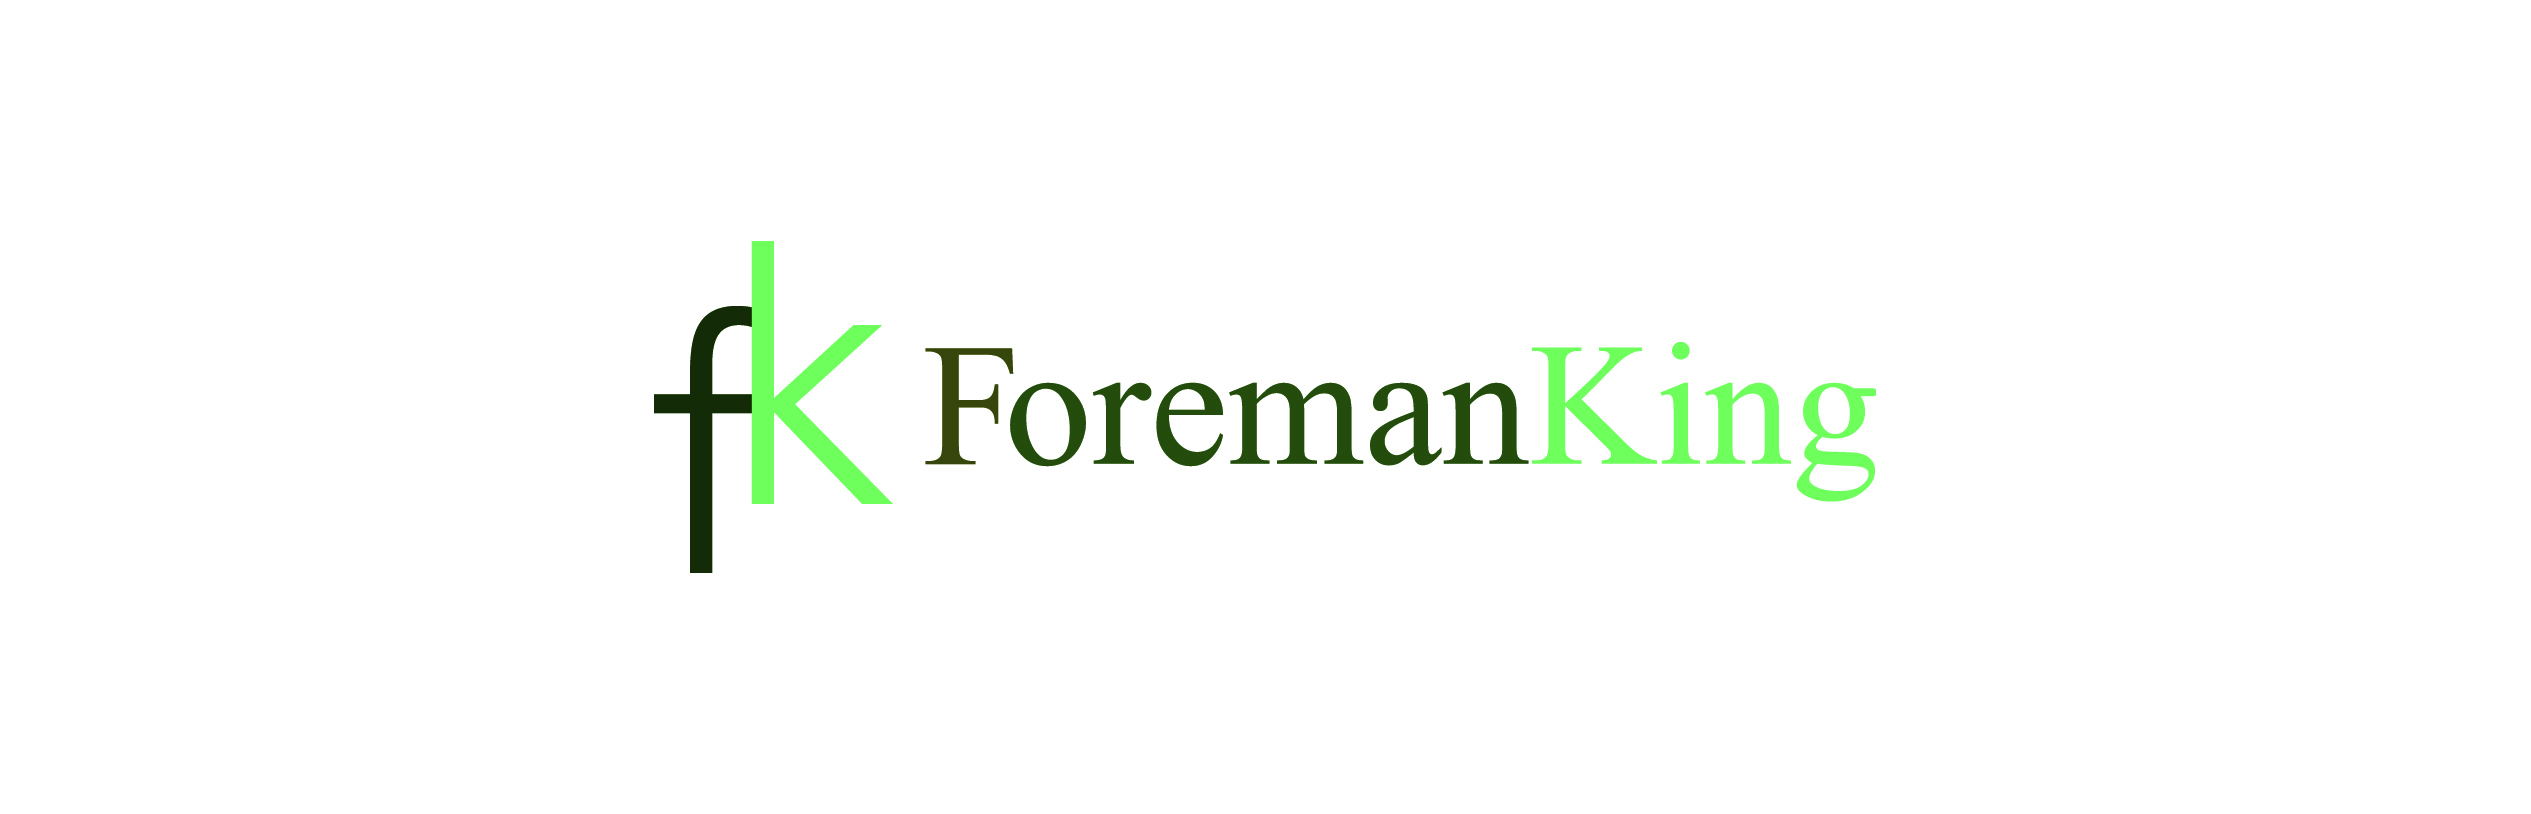 Foreman King - 01753 643222